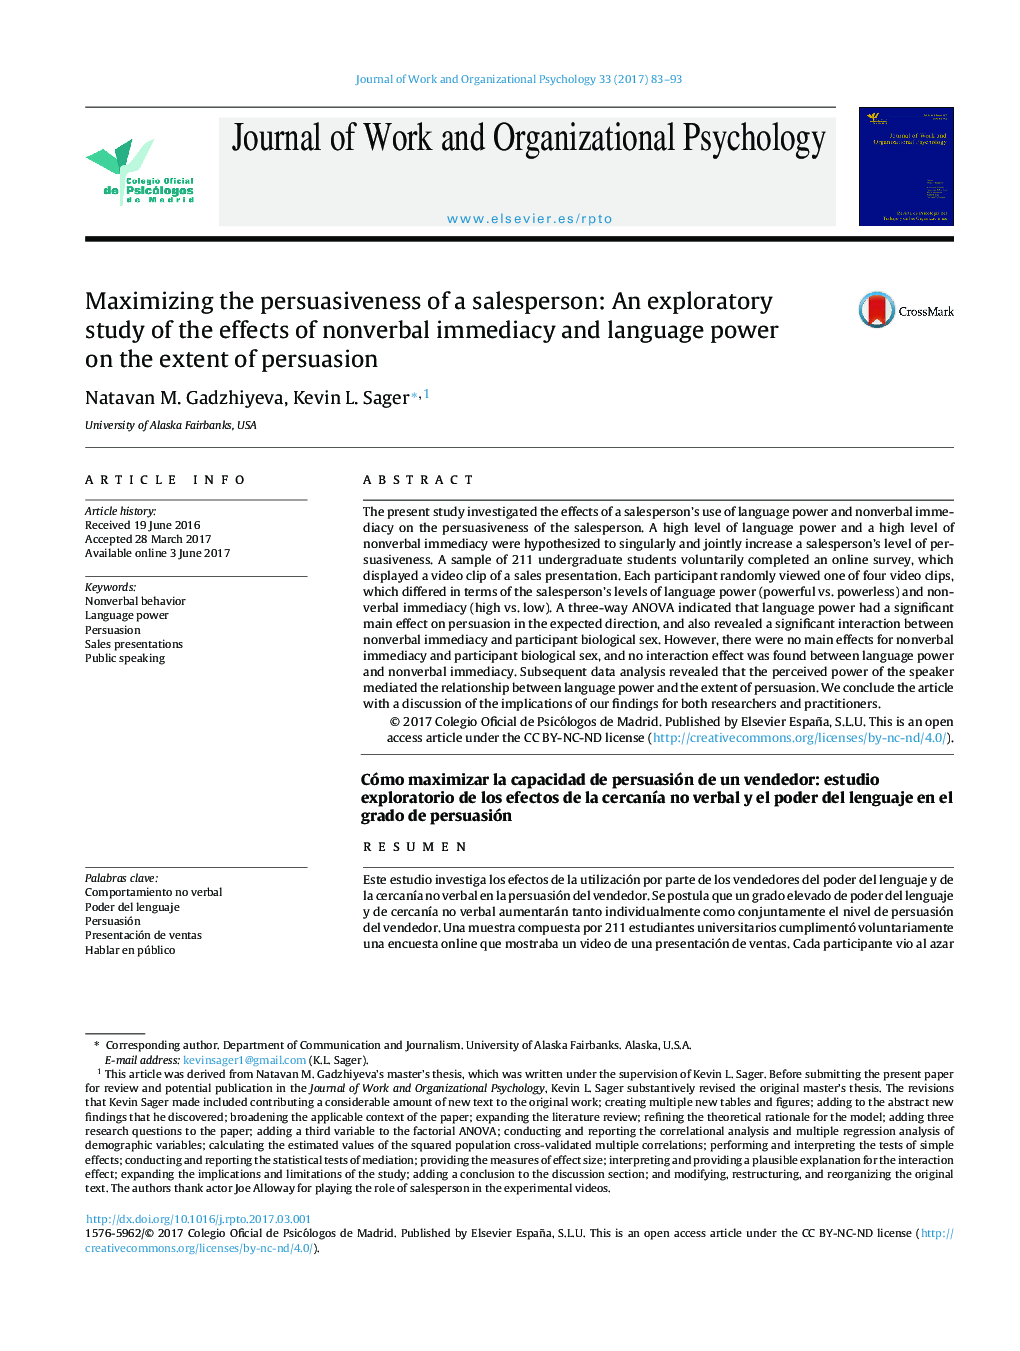 حداکثر سازی مشروعیت یک فروشنده: یک مطالعه اکتشافی در مورد تأثیر مستقیم و غیر مستقیم زبان غیرمستقیم و قدرت زبان بر میزان تردید 